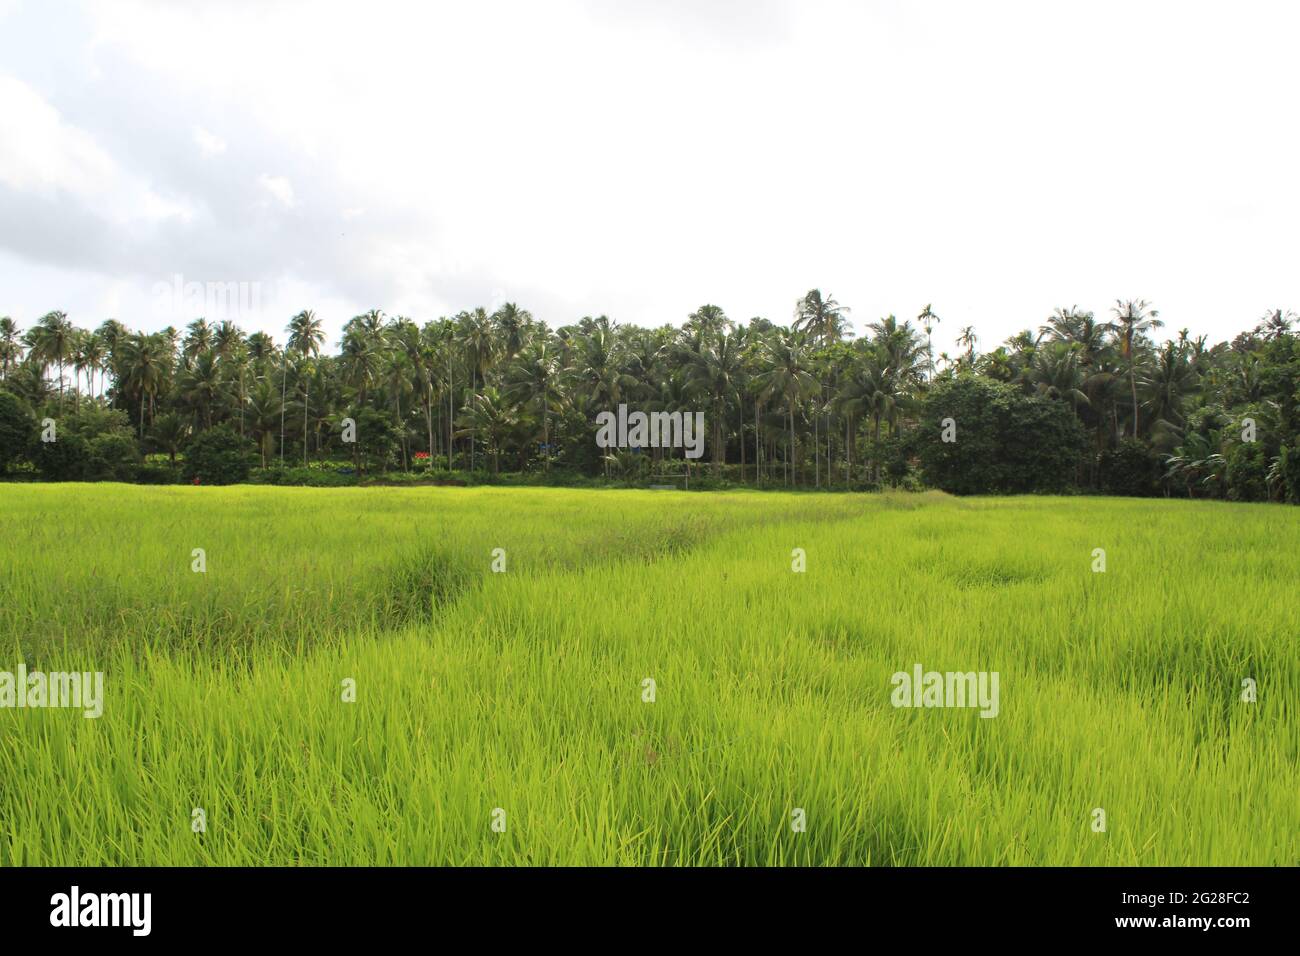 Magnifique champ ouvert de riz/blé au Kerala, dans le sud de l'Inde. Paysage de Kerala. Fermes de Kerala. Terres agricoles en Inde du Sud. Ferme verte lumineuse à Kerala Banque D'Images